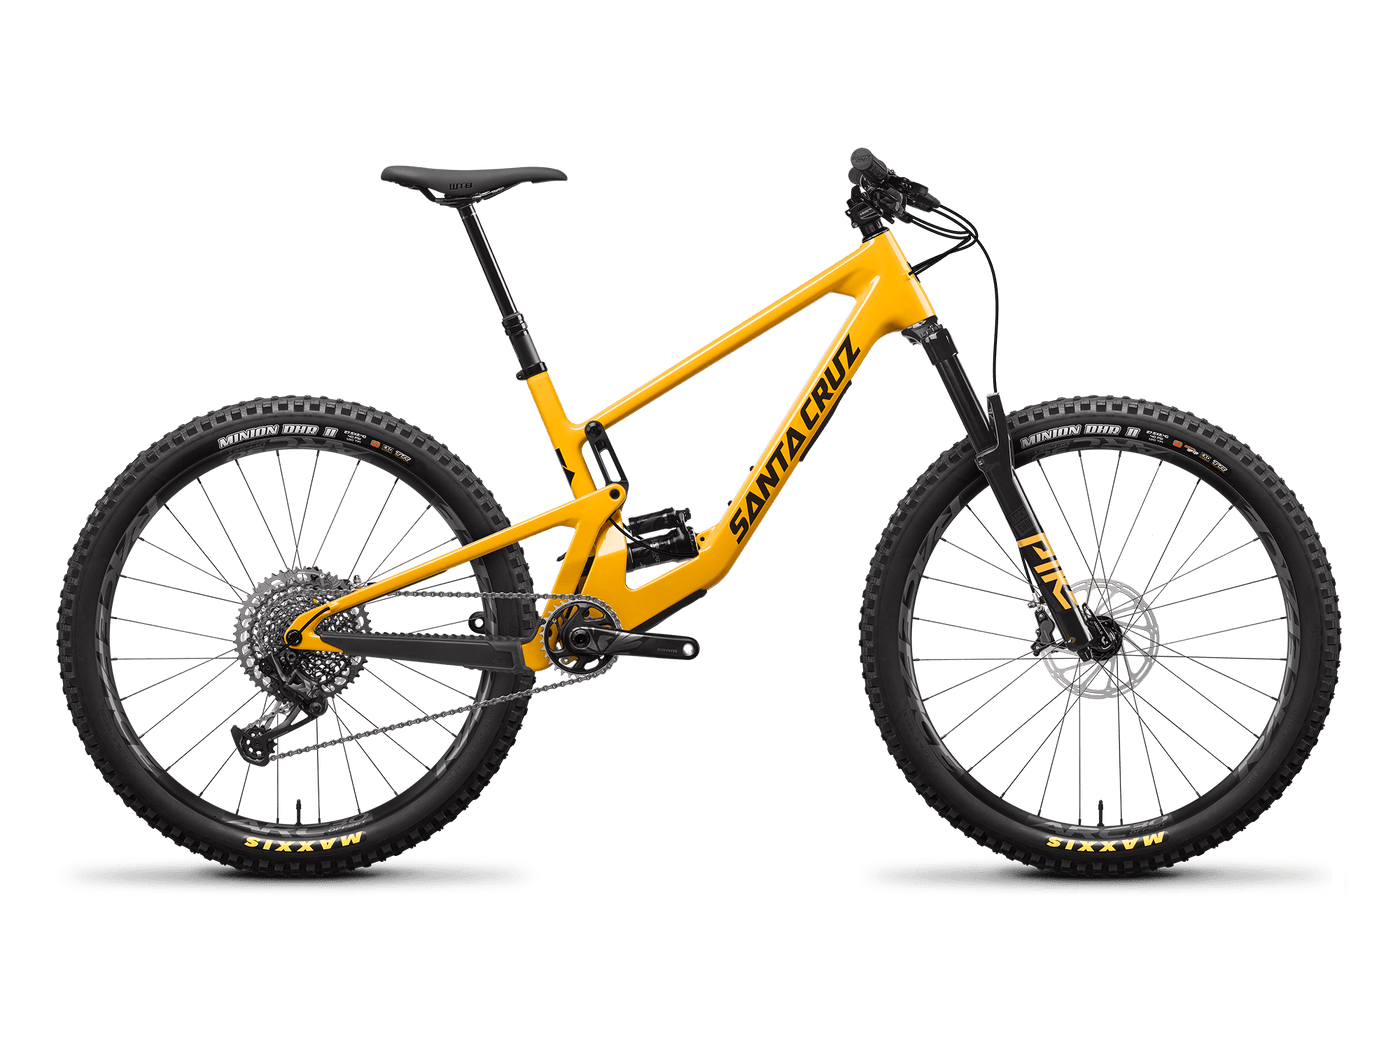 Bicicleta Santa Cruz 5010 V4 Kit X01 27.5"